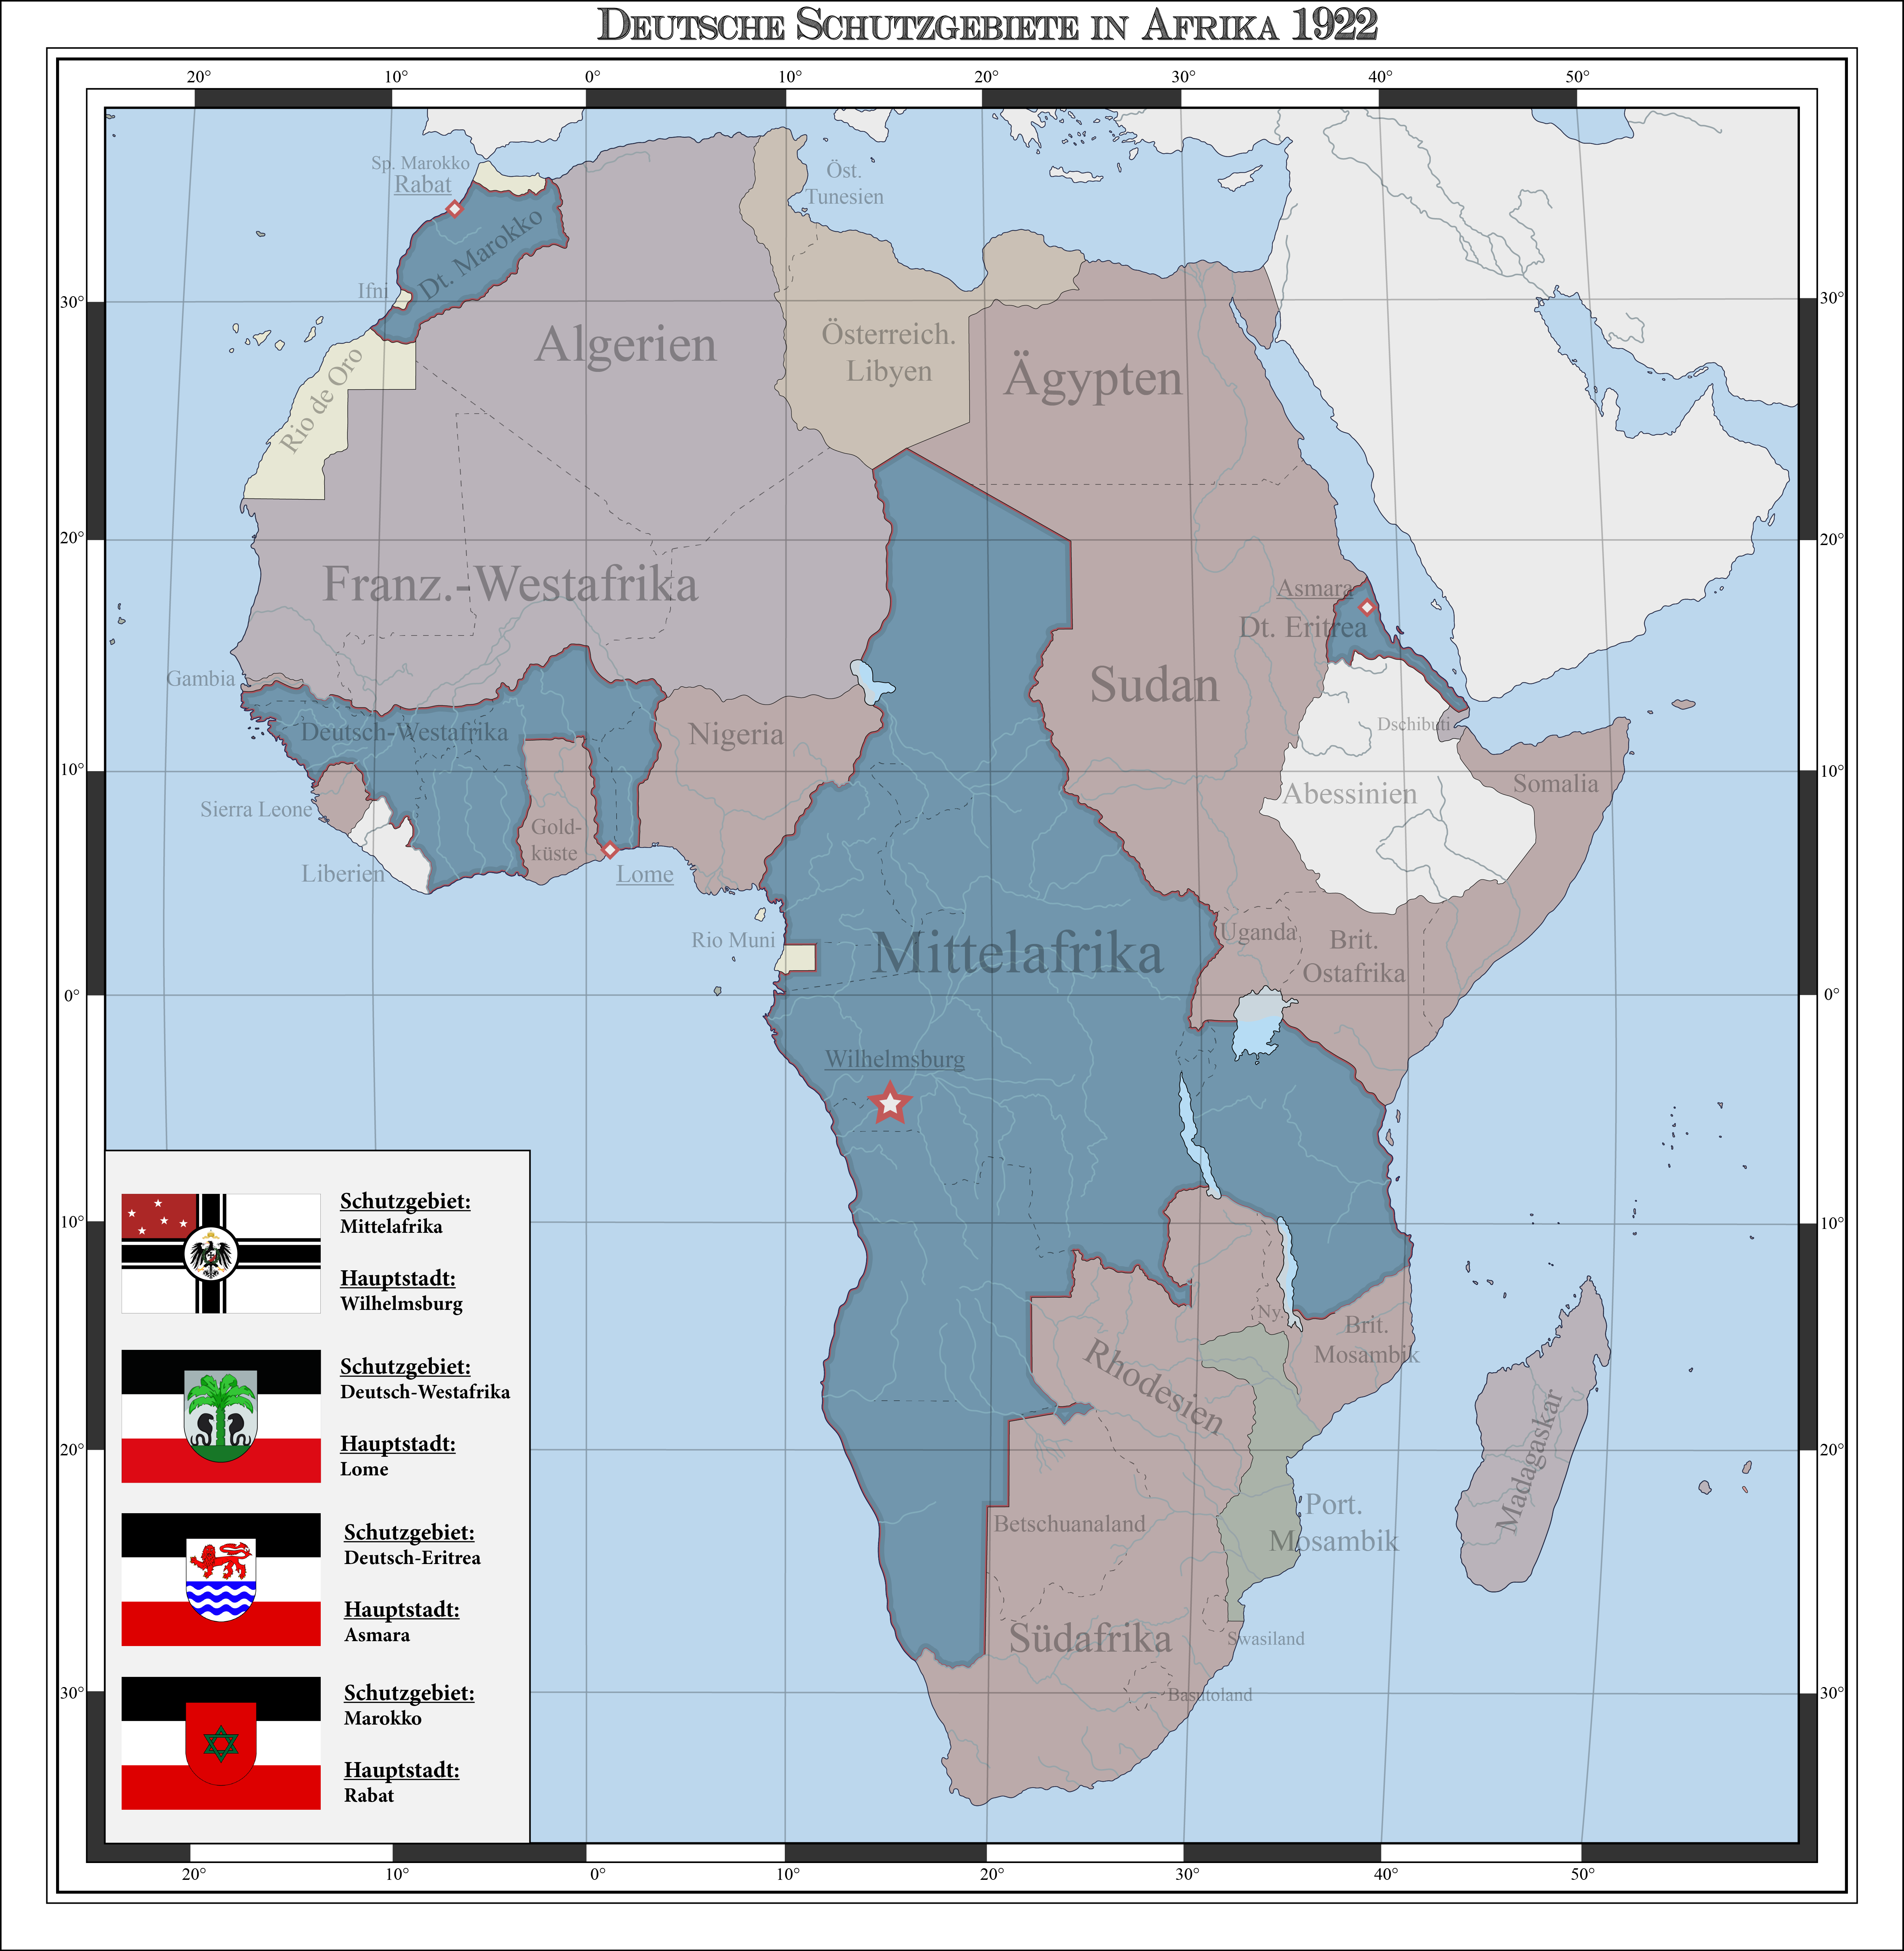  German  colonies in Africa  1922 alternate history by 